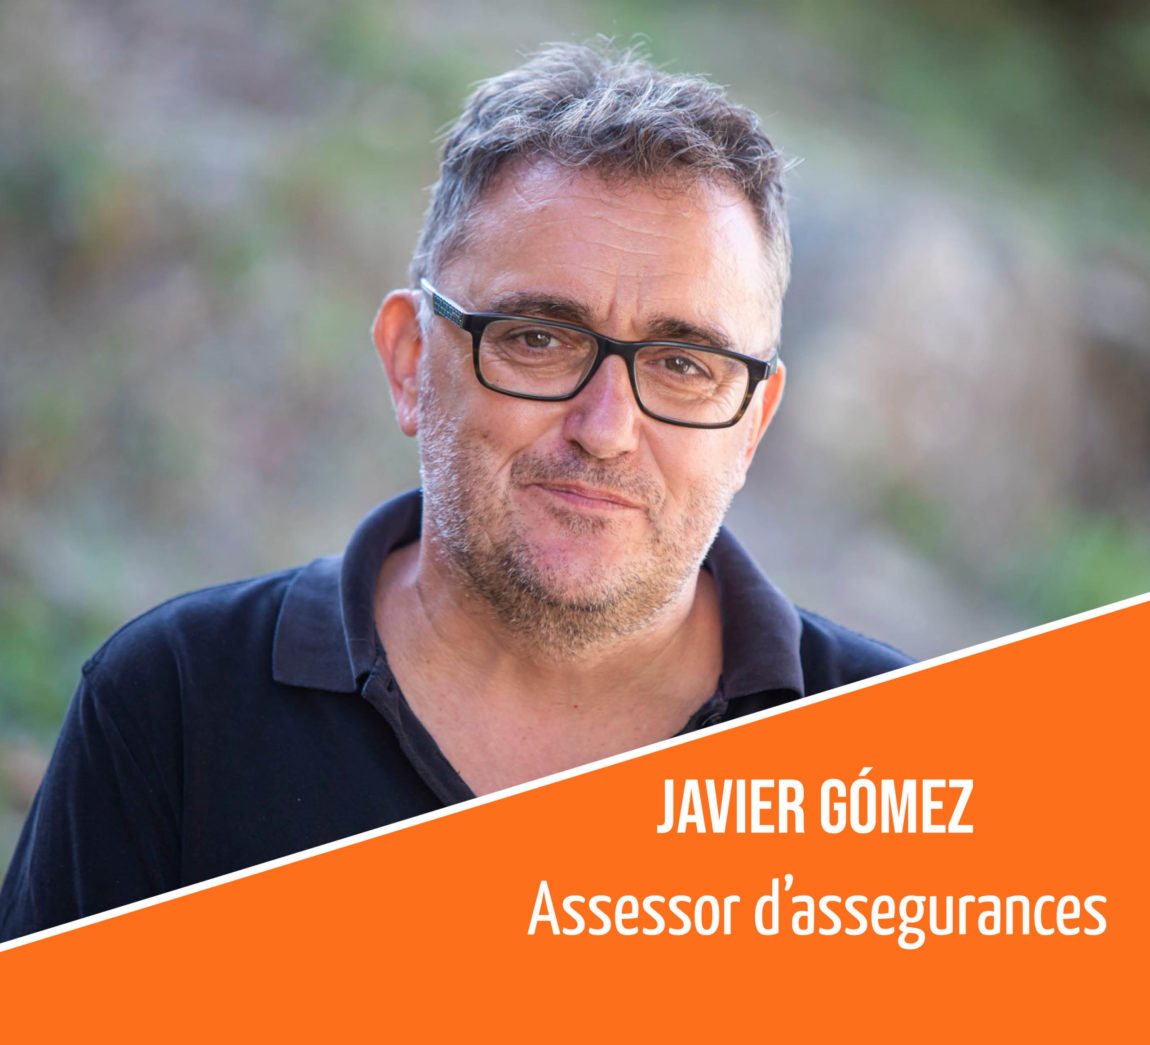 Coneix l’equip humà de la FAC: Javier Gómez, assessor d’assegurances